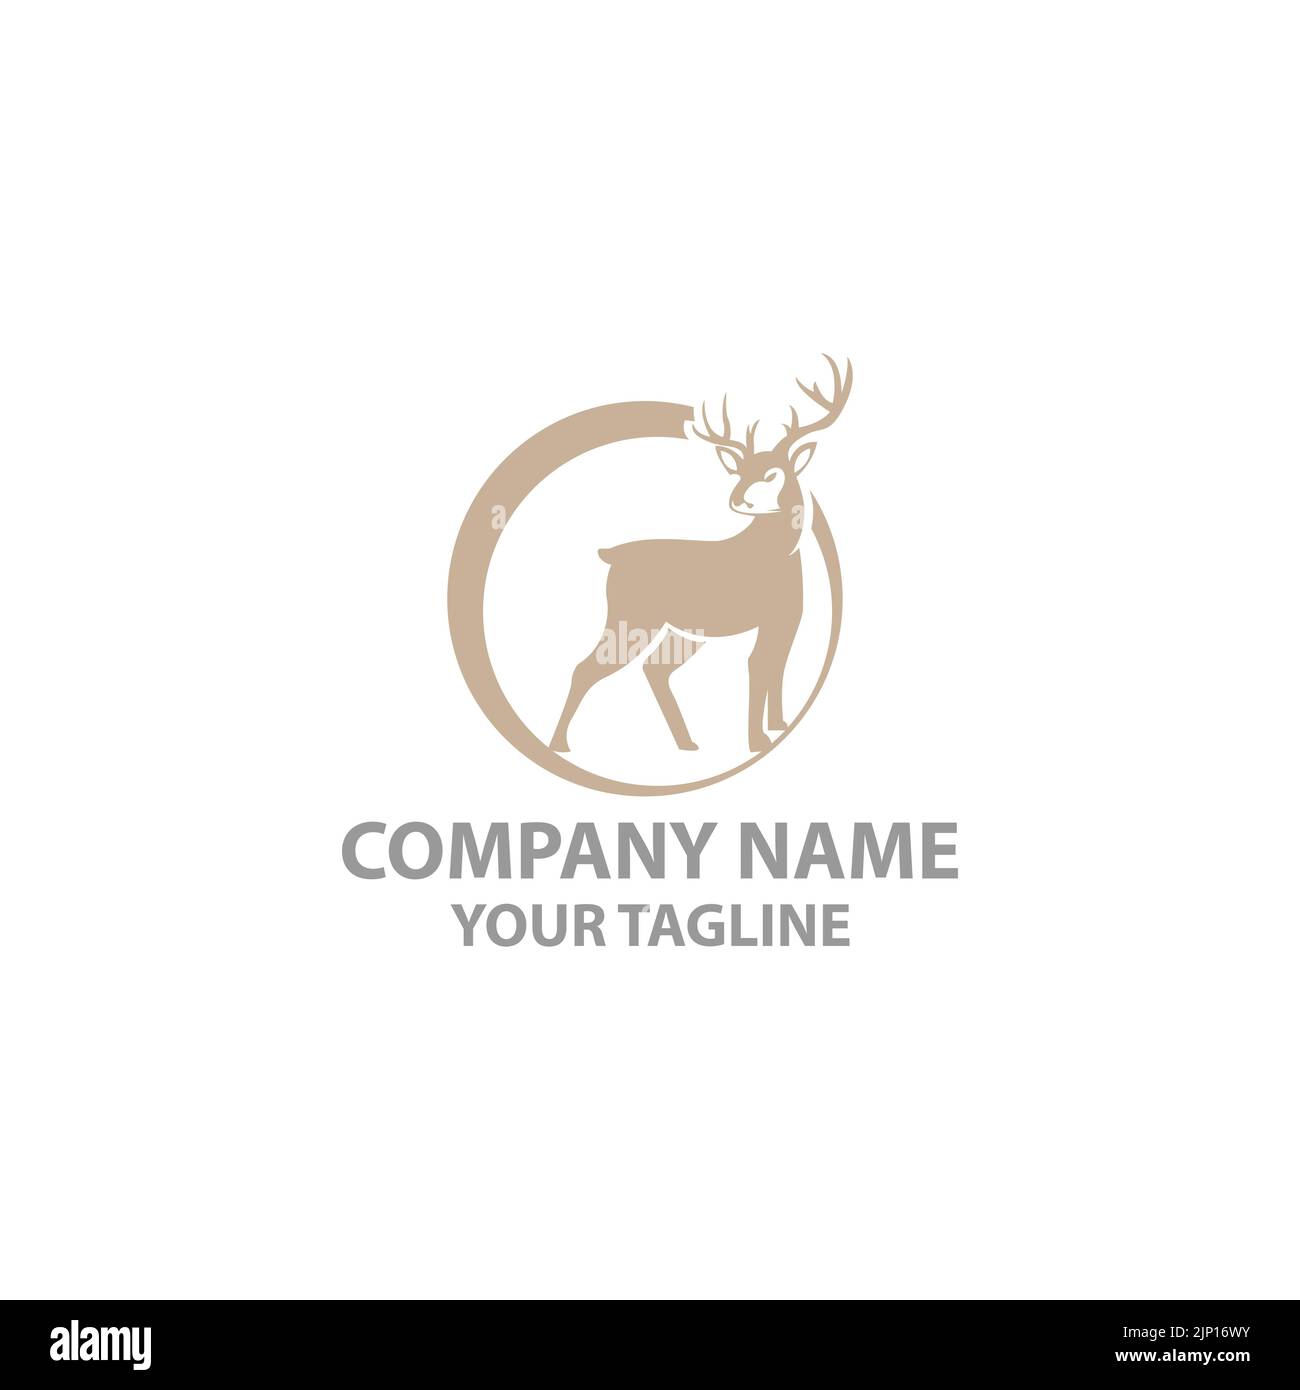 deer logo design inspiration. deer head,deer monoline logo design vector template.EPS 10 Stock Vector